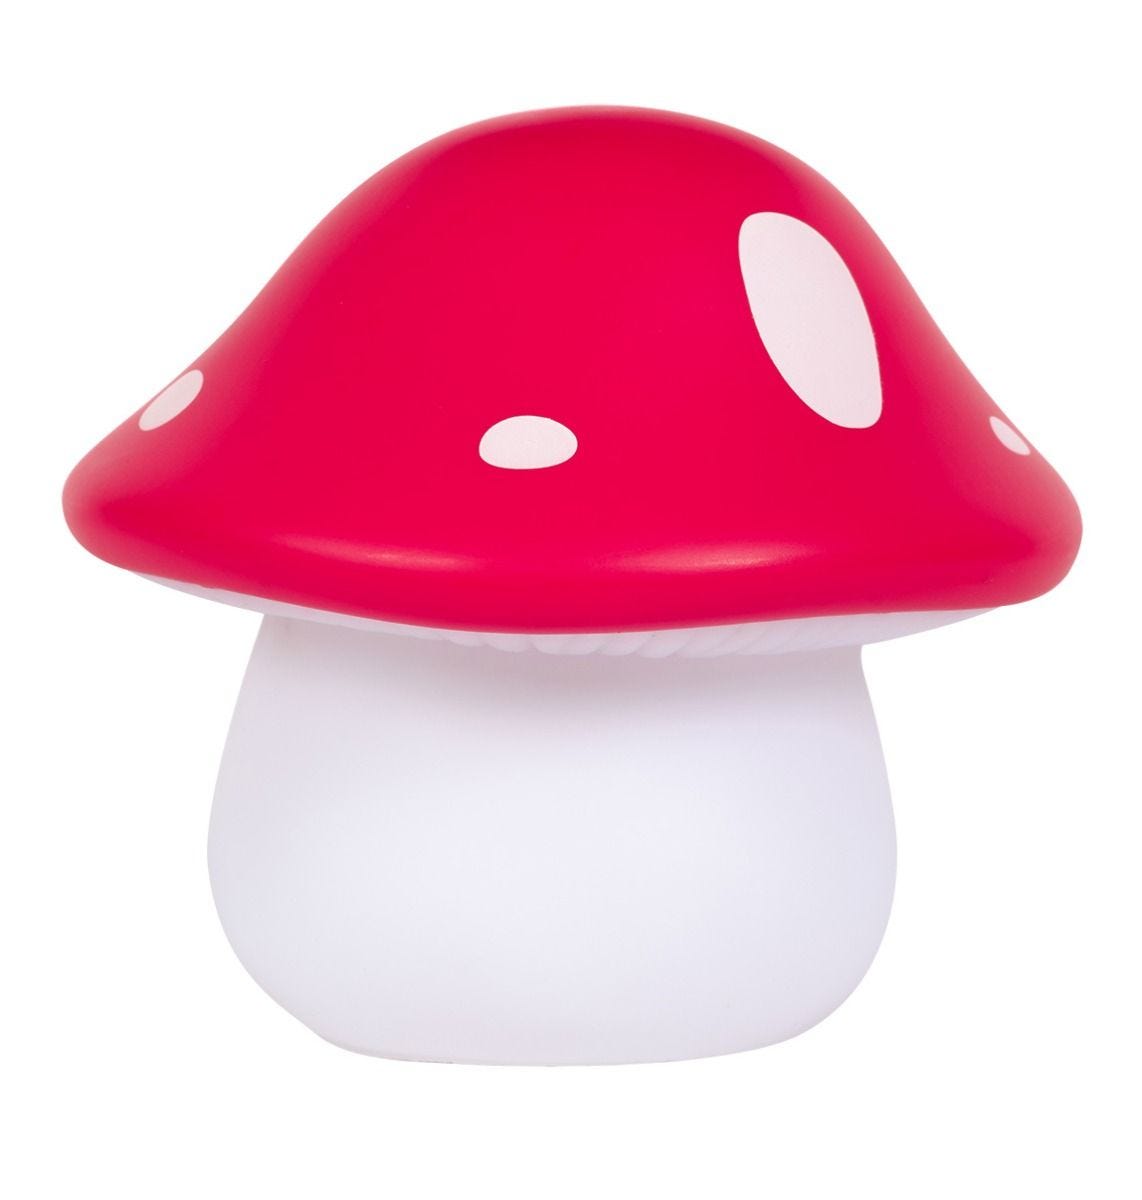 llhowh69-lr-1_little_light_mushroom_red